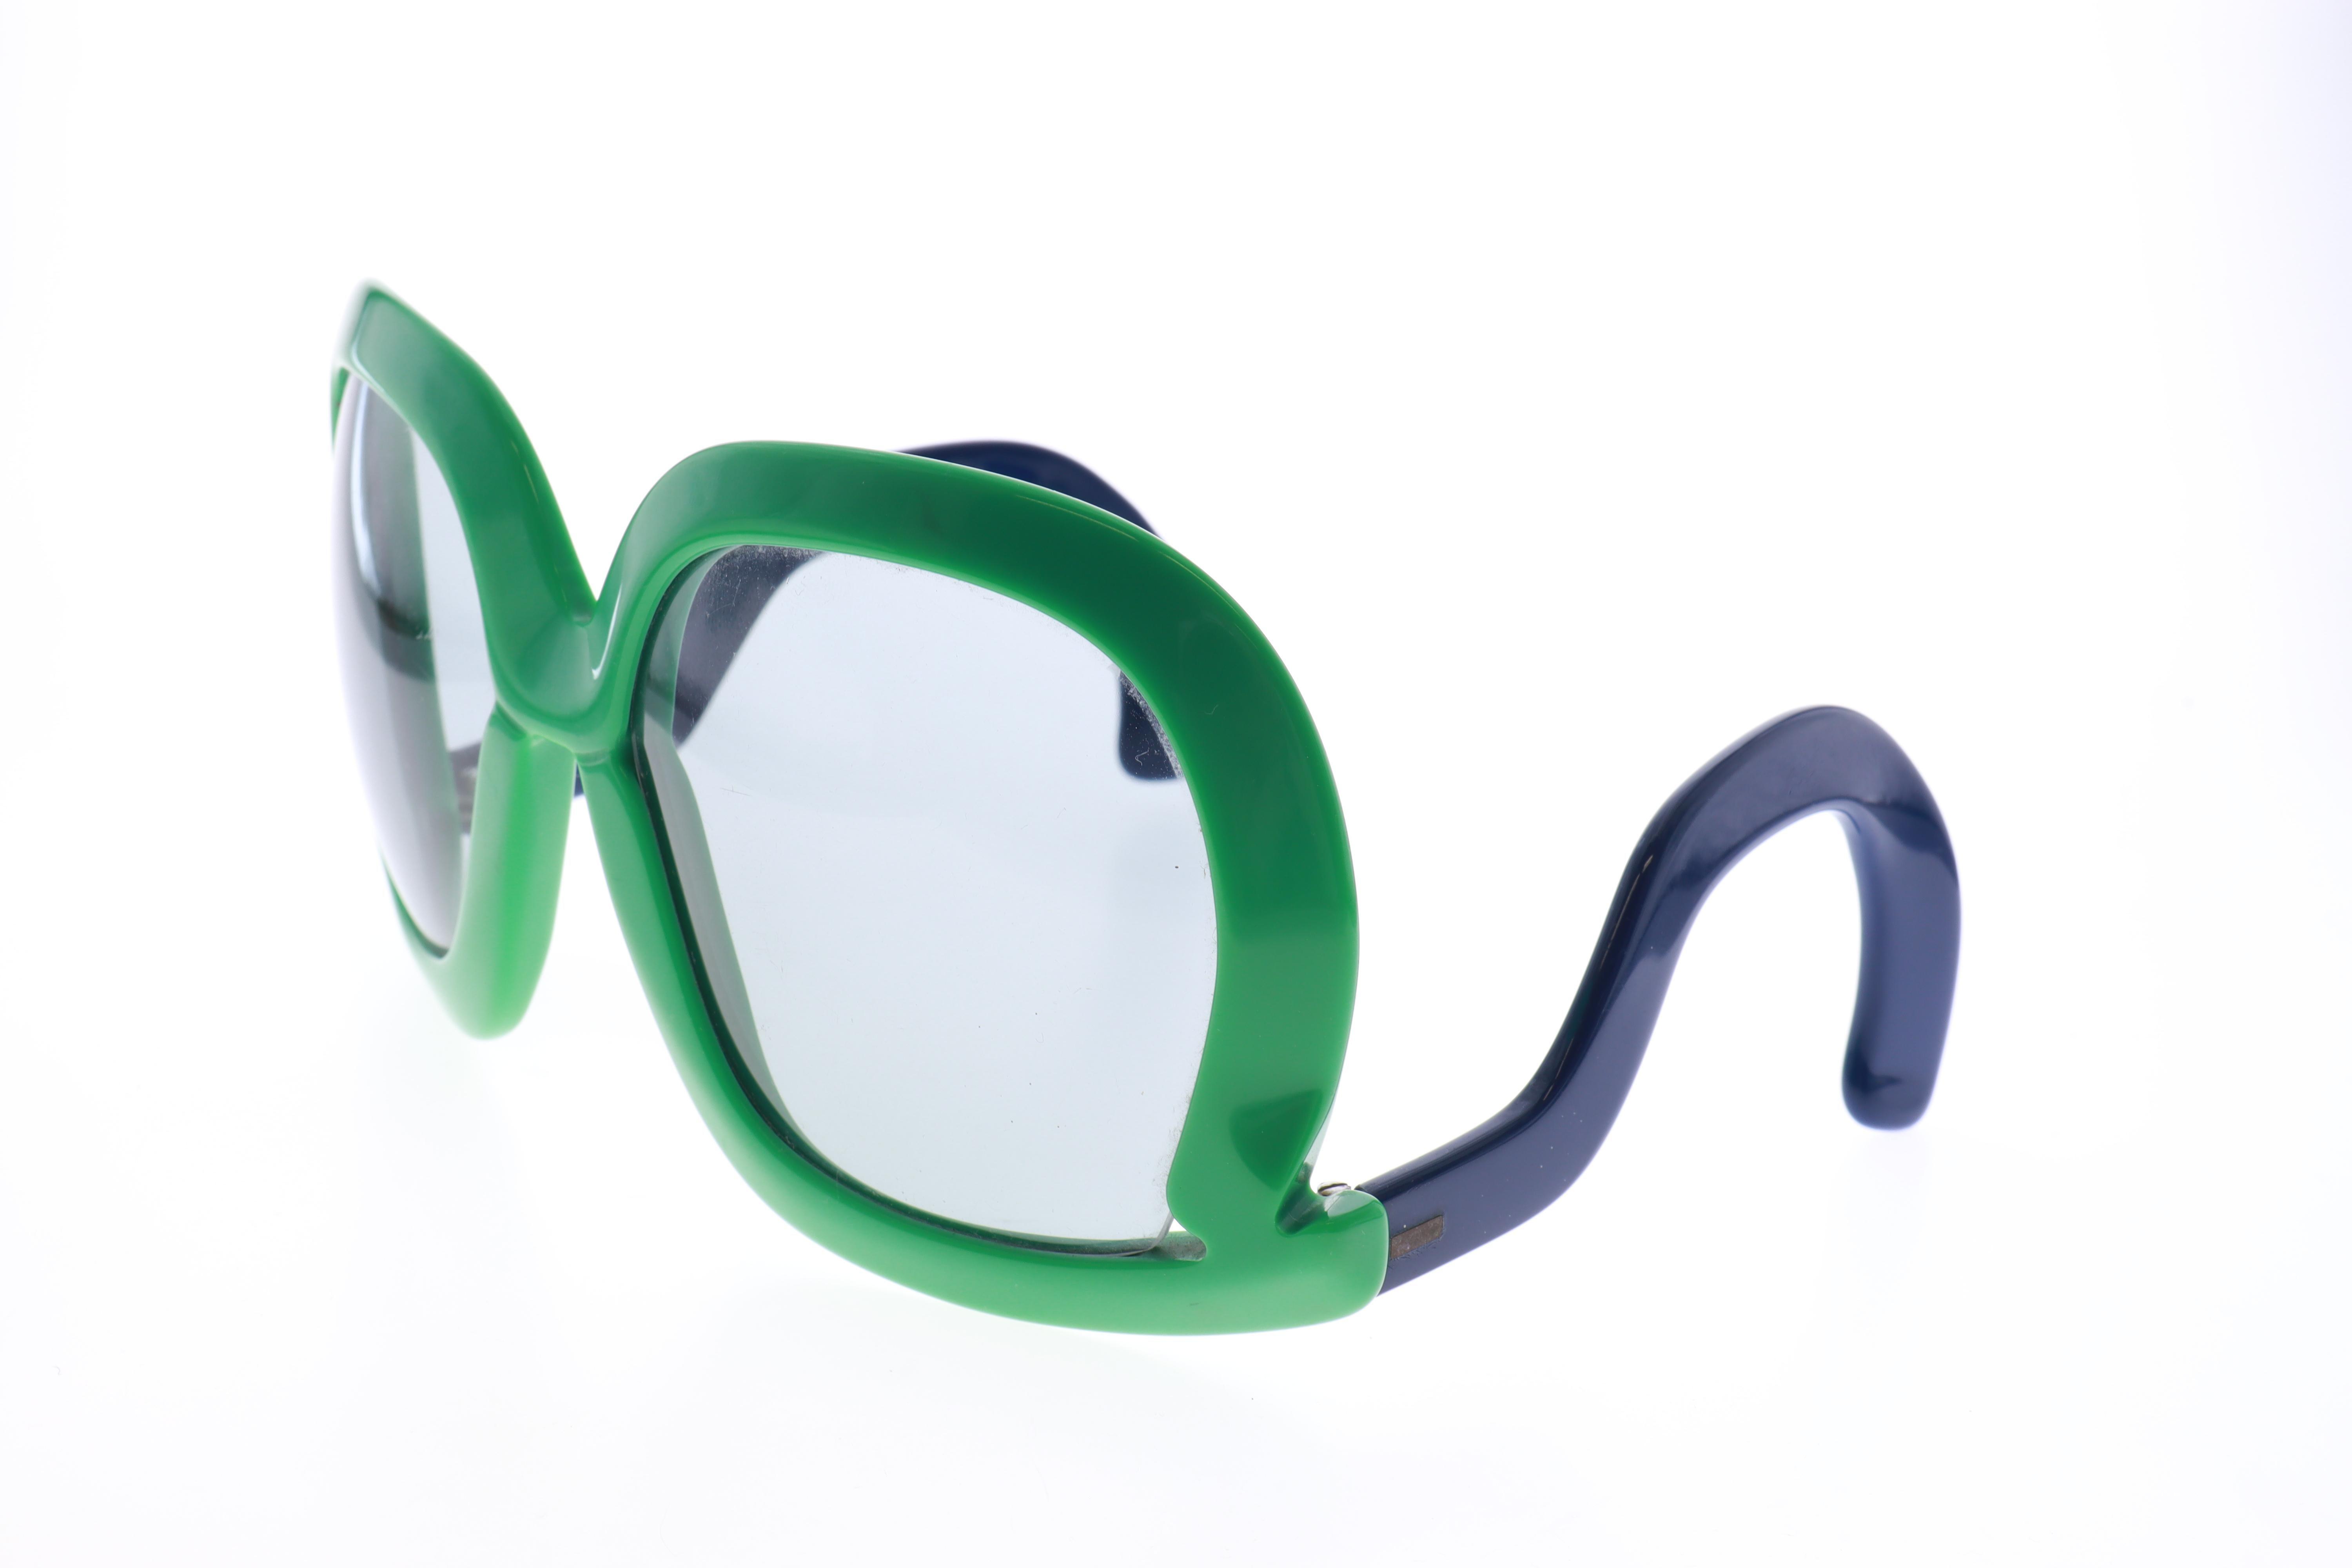 Modell 564 der legendären Silhouette FUTURA Serie . 

DORA DEMEL entwarf die revolutionäre Sonnenbrille 1974, die in limitierter Auflage produziert wurde und damit Modegeschichte geschrieben hat. 

Es ist eine futuristische Kombination aus Mode und